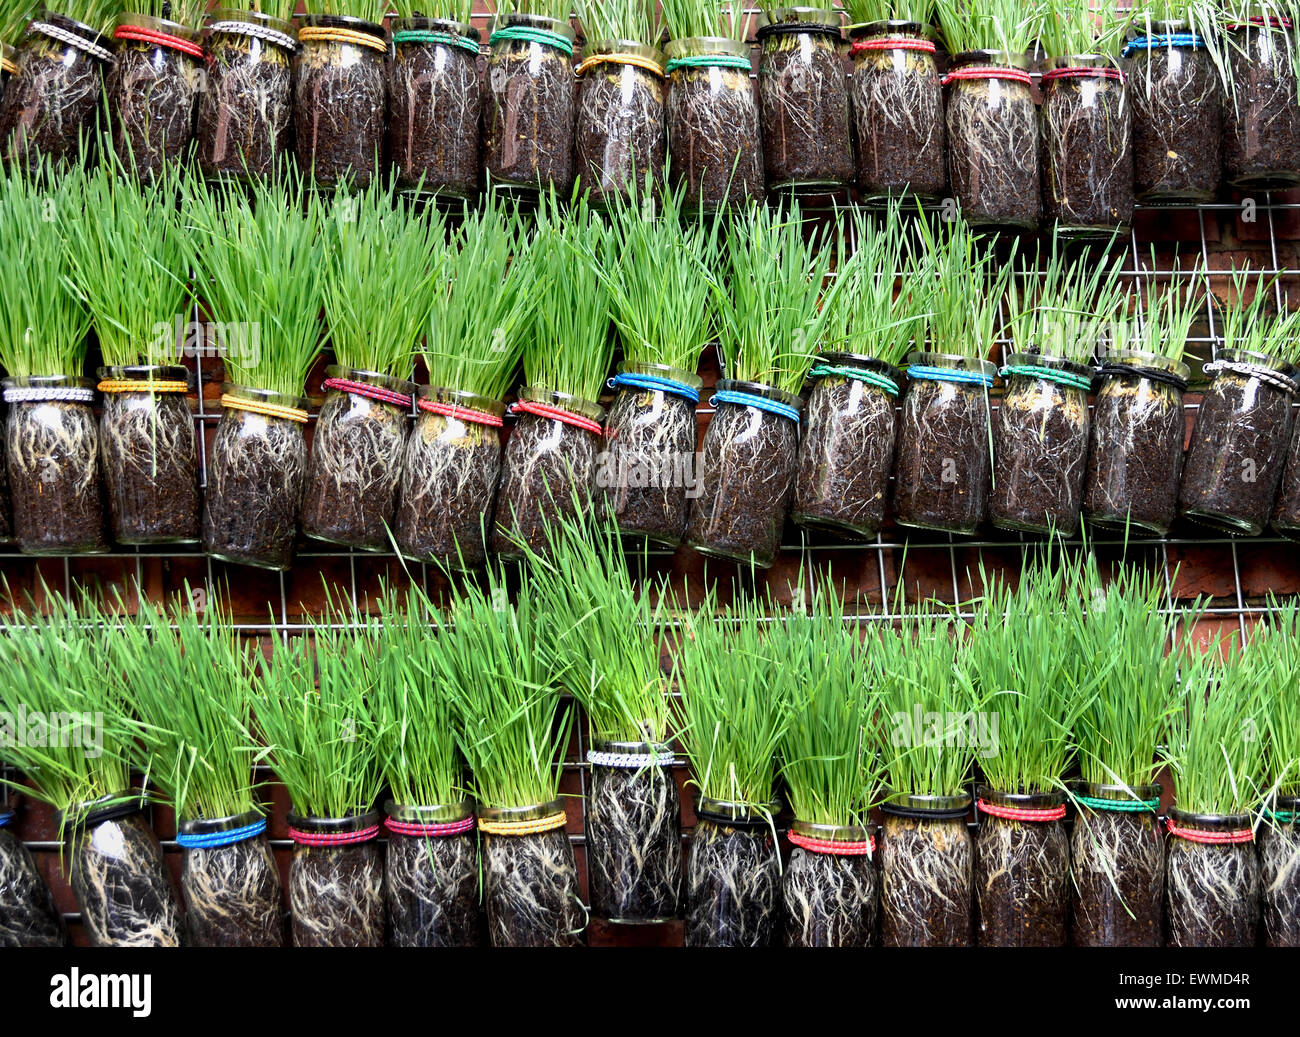 Jardiniers herbes Légumes frais pour la vente du marché alimentaire intérieur chinois Chine Shanghai Banque D'Images